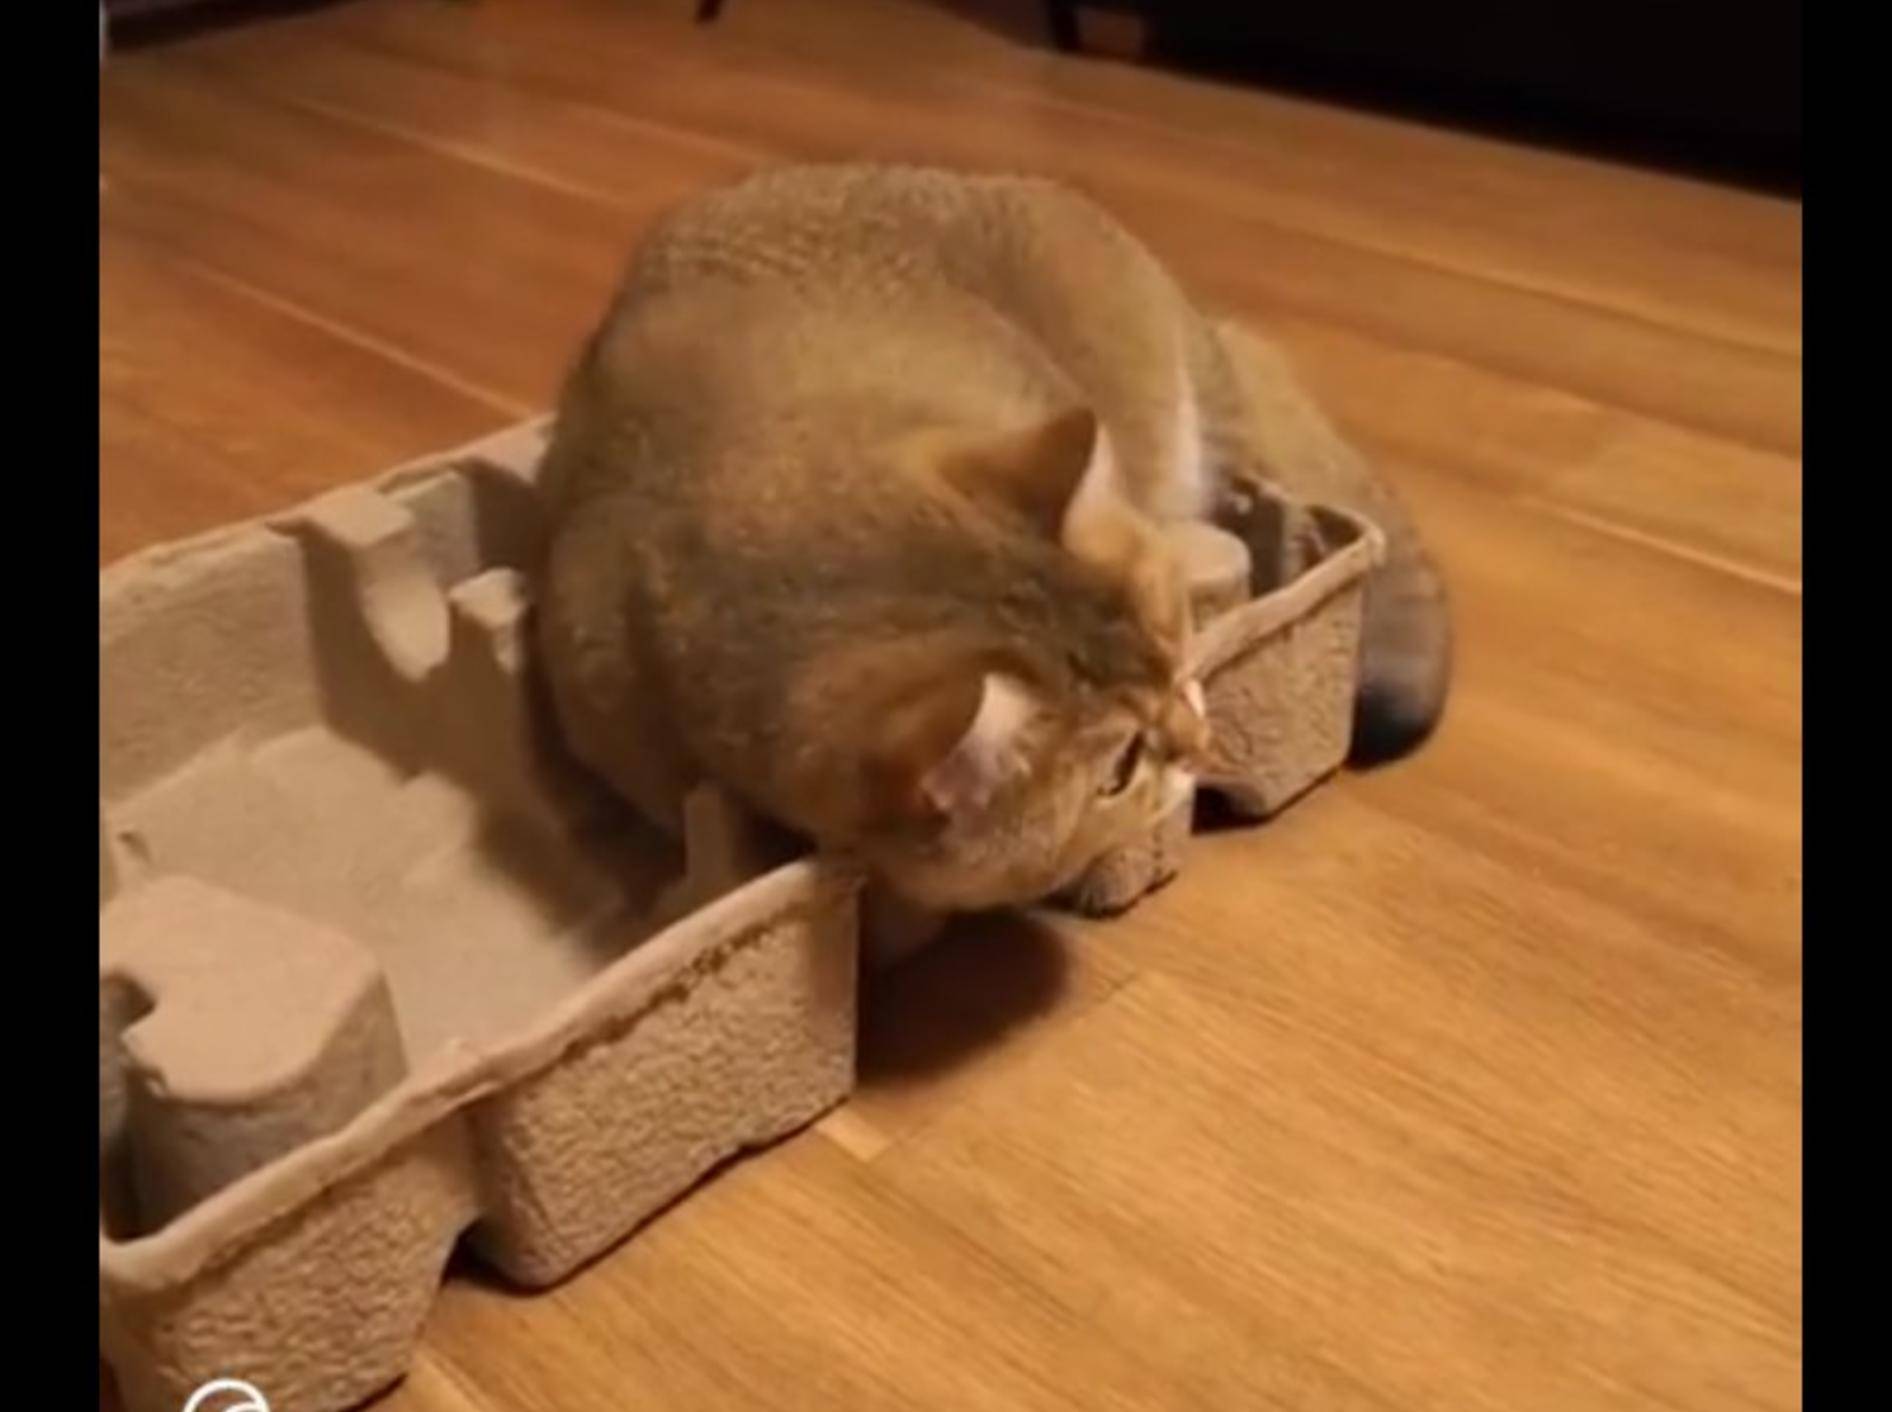 Kein Karton ist für diese Katze zu klein! Passt schon – YouTube / The Dodo